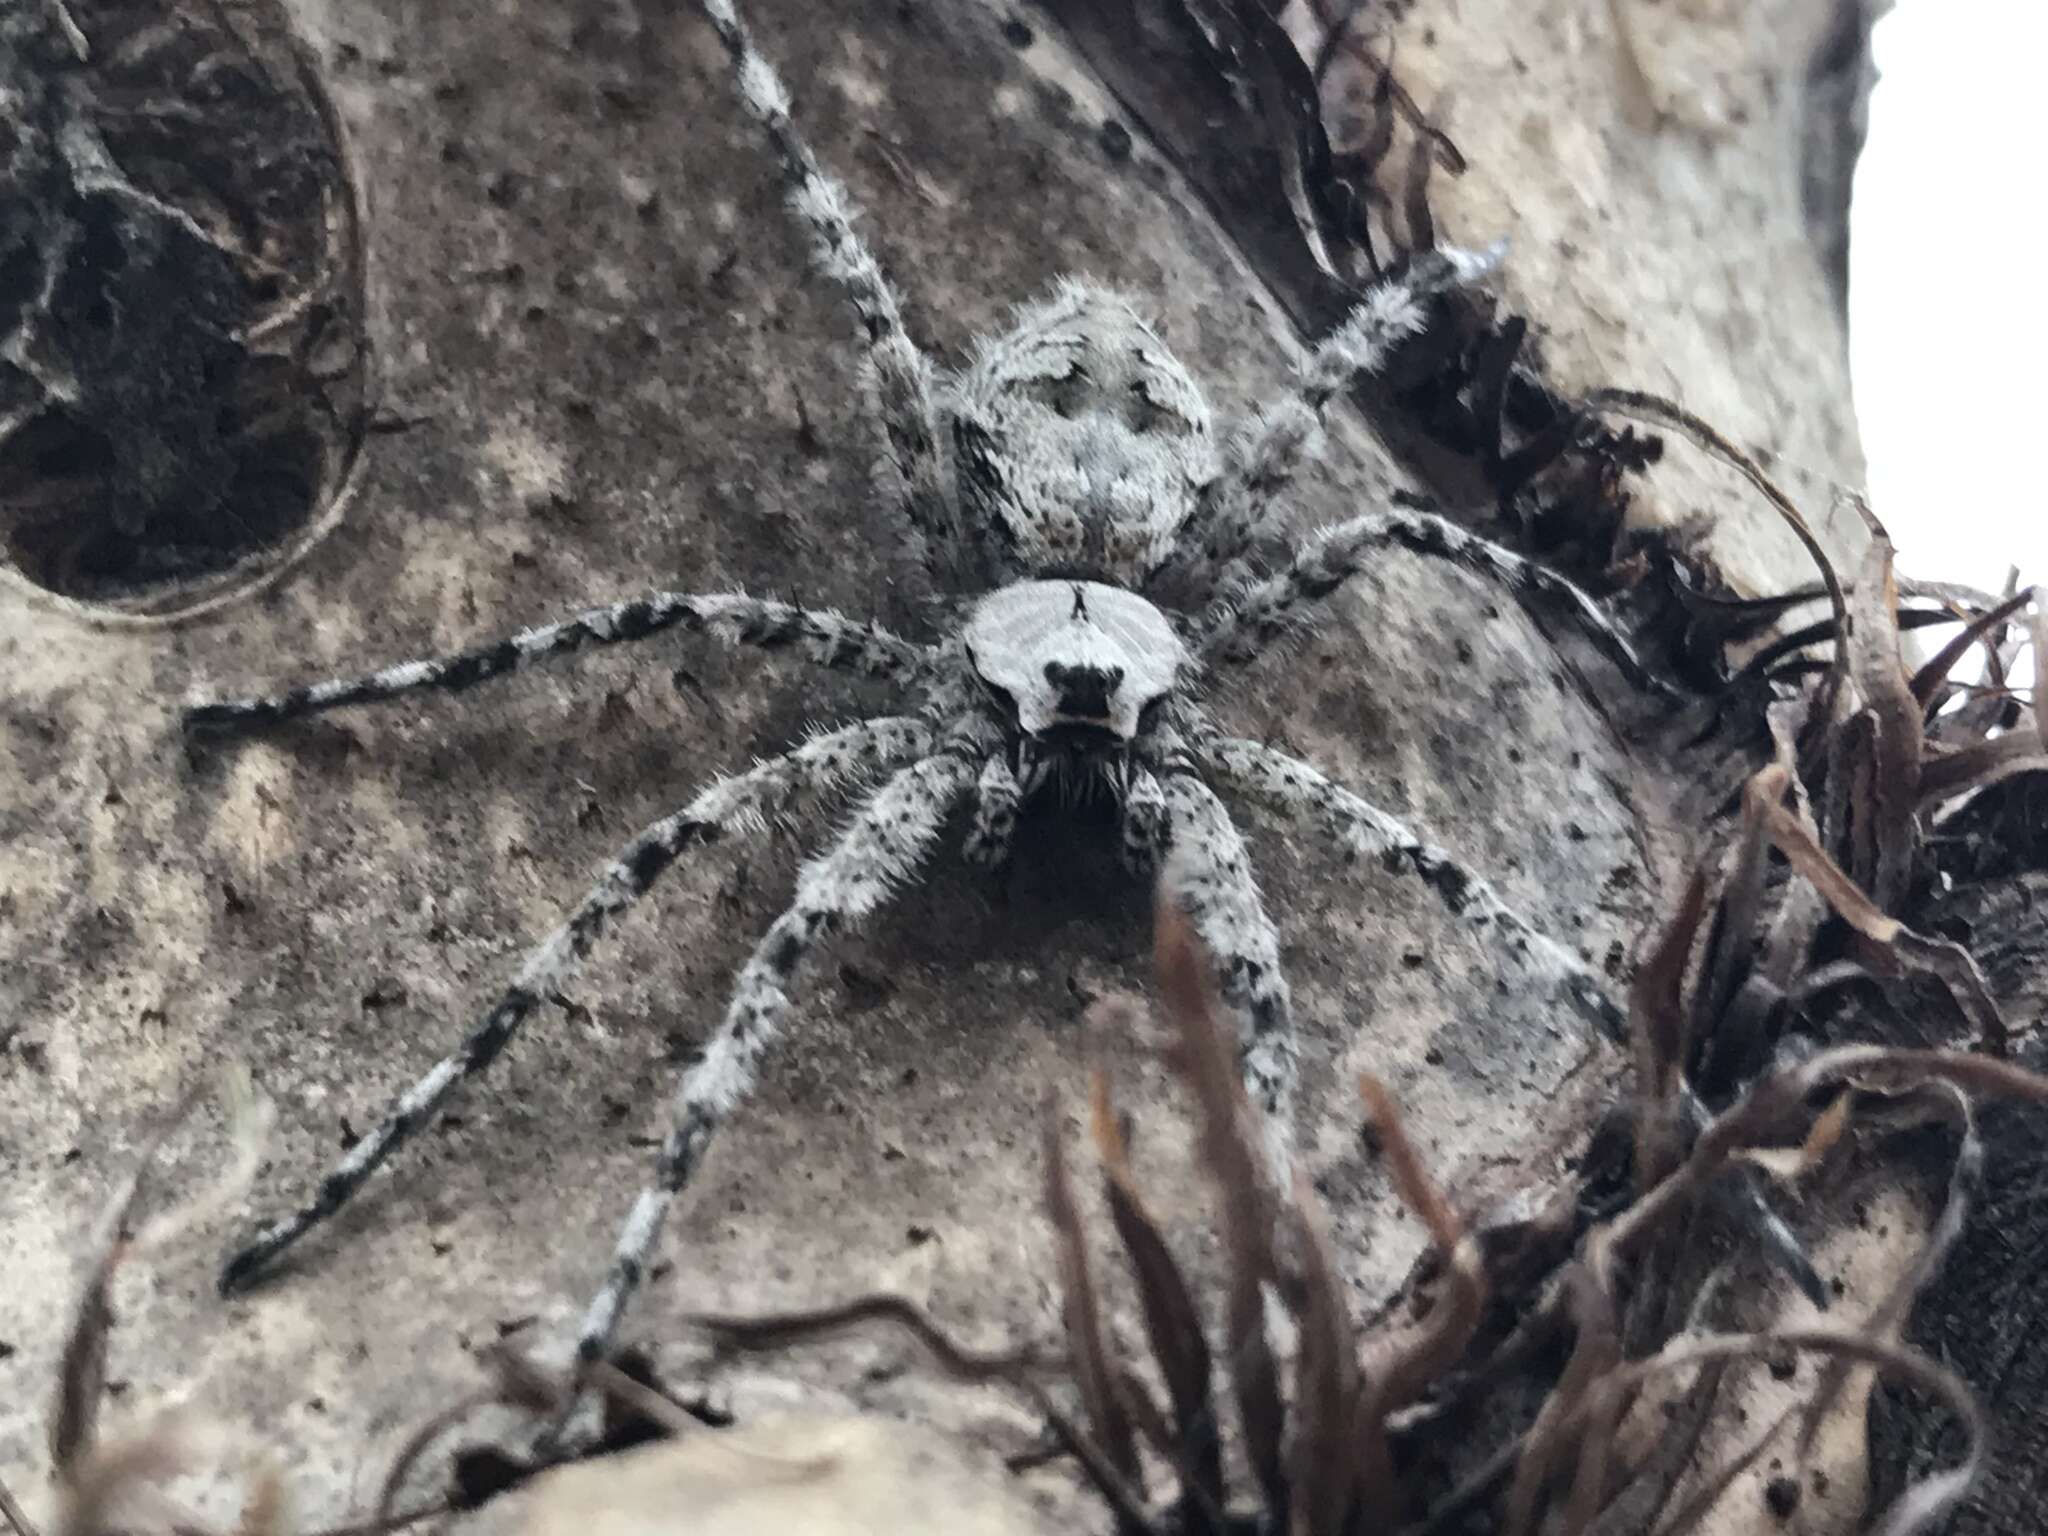 Image of Whitebanded Fishing Spider